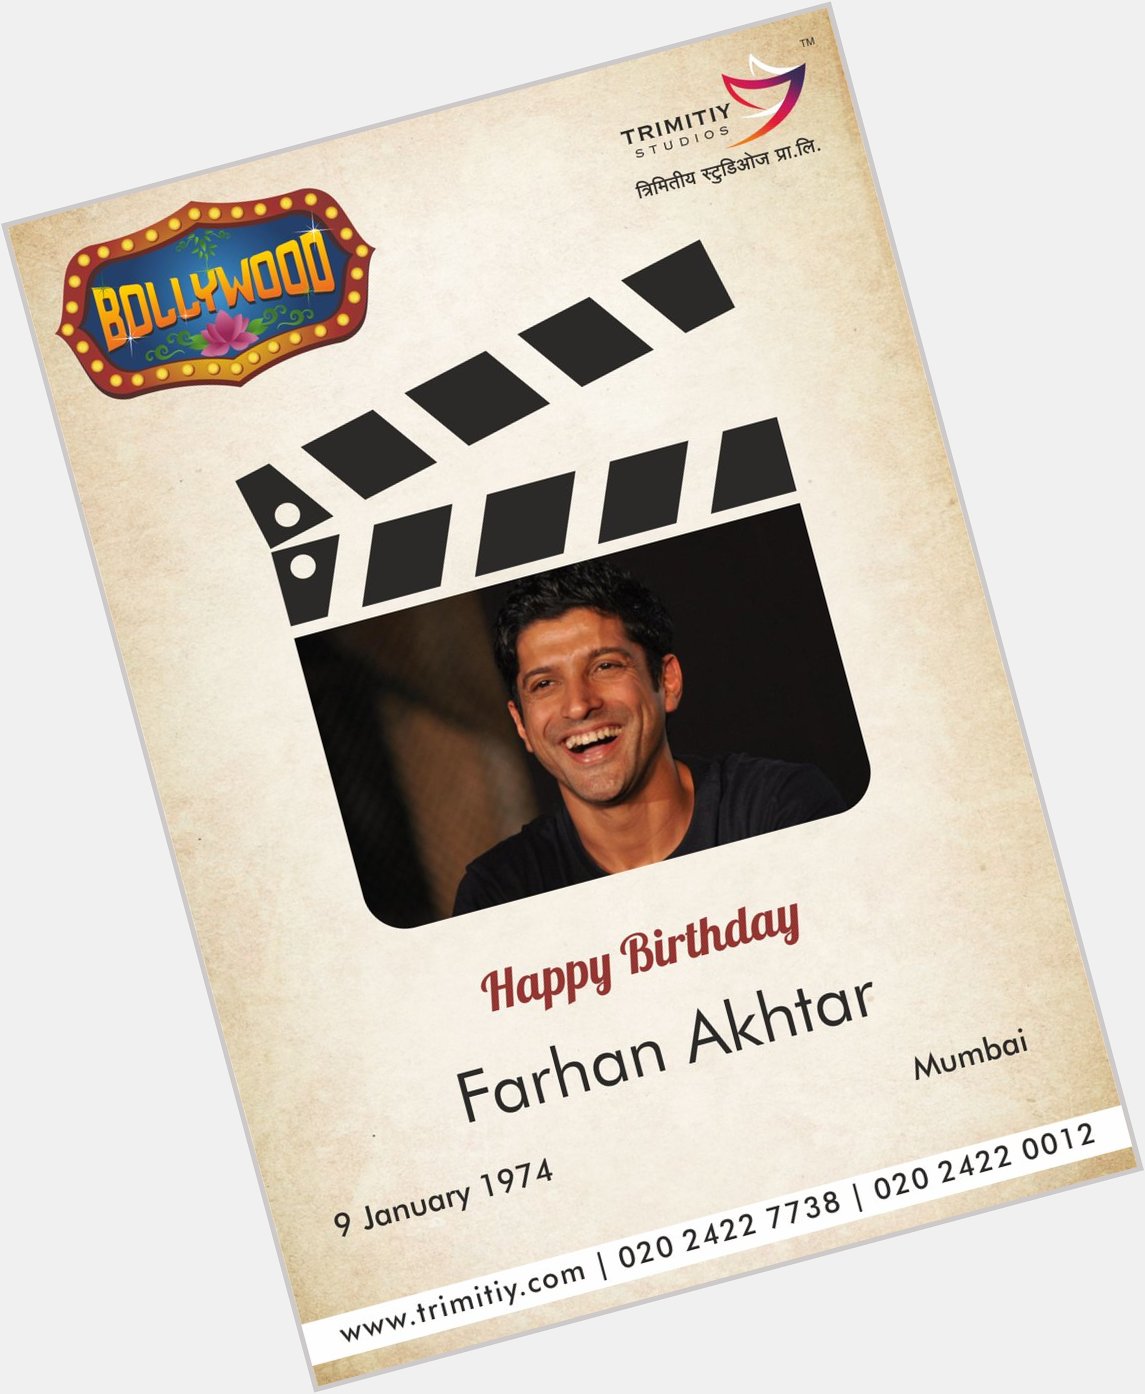 Trimitiy Studios wishing a Very Happy Birthday to Farhan Akhtar...  